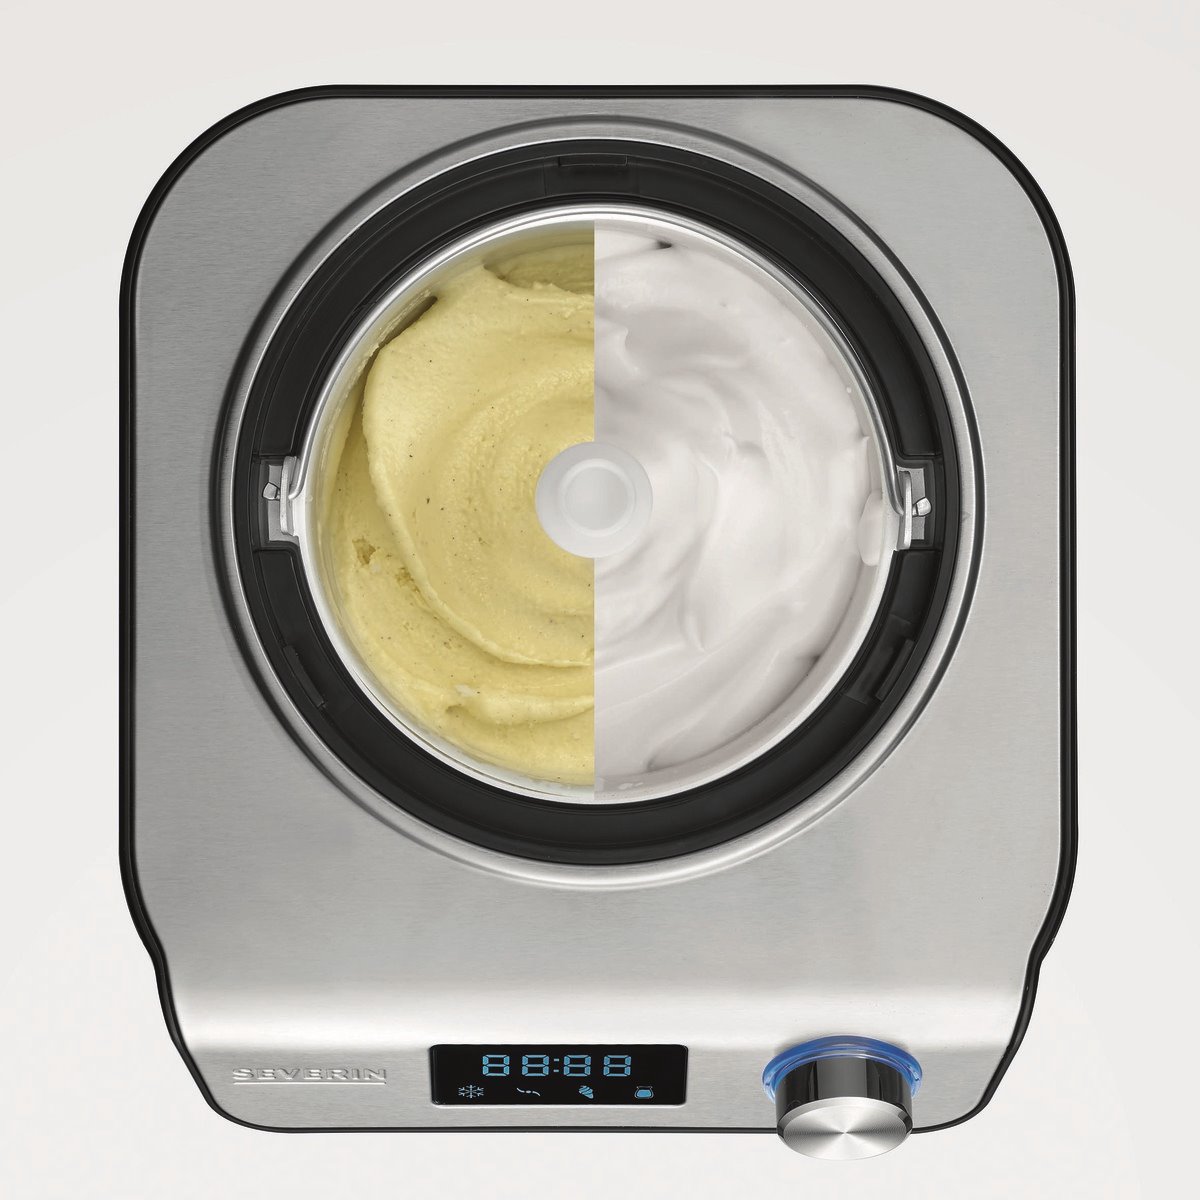 HOMCOM Yogurtera 30W Capacidad 1,44L con 8 Tarros de Cristal de 180 ml  Termostato Ajustable Temporizador de 1-48 Horas y Apagado Automático  36x18,8x14 cm Plata - Conforama